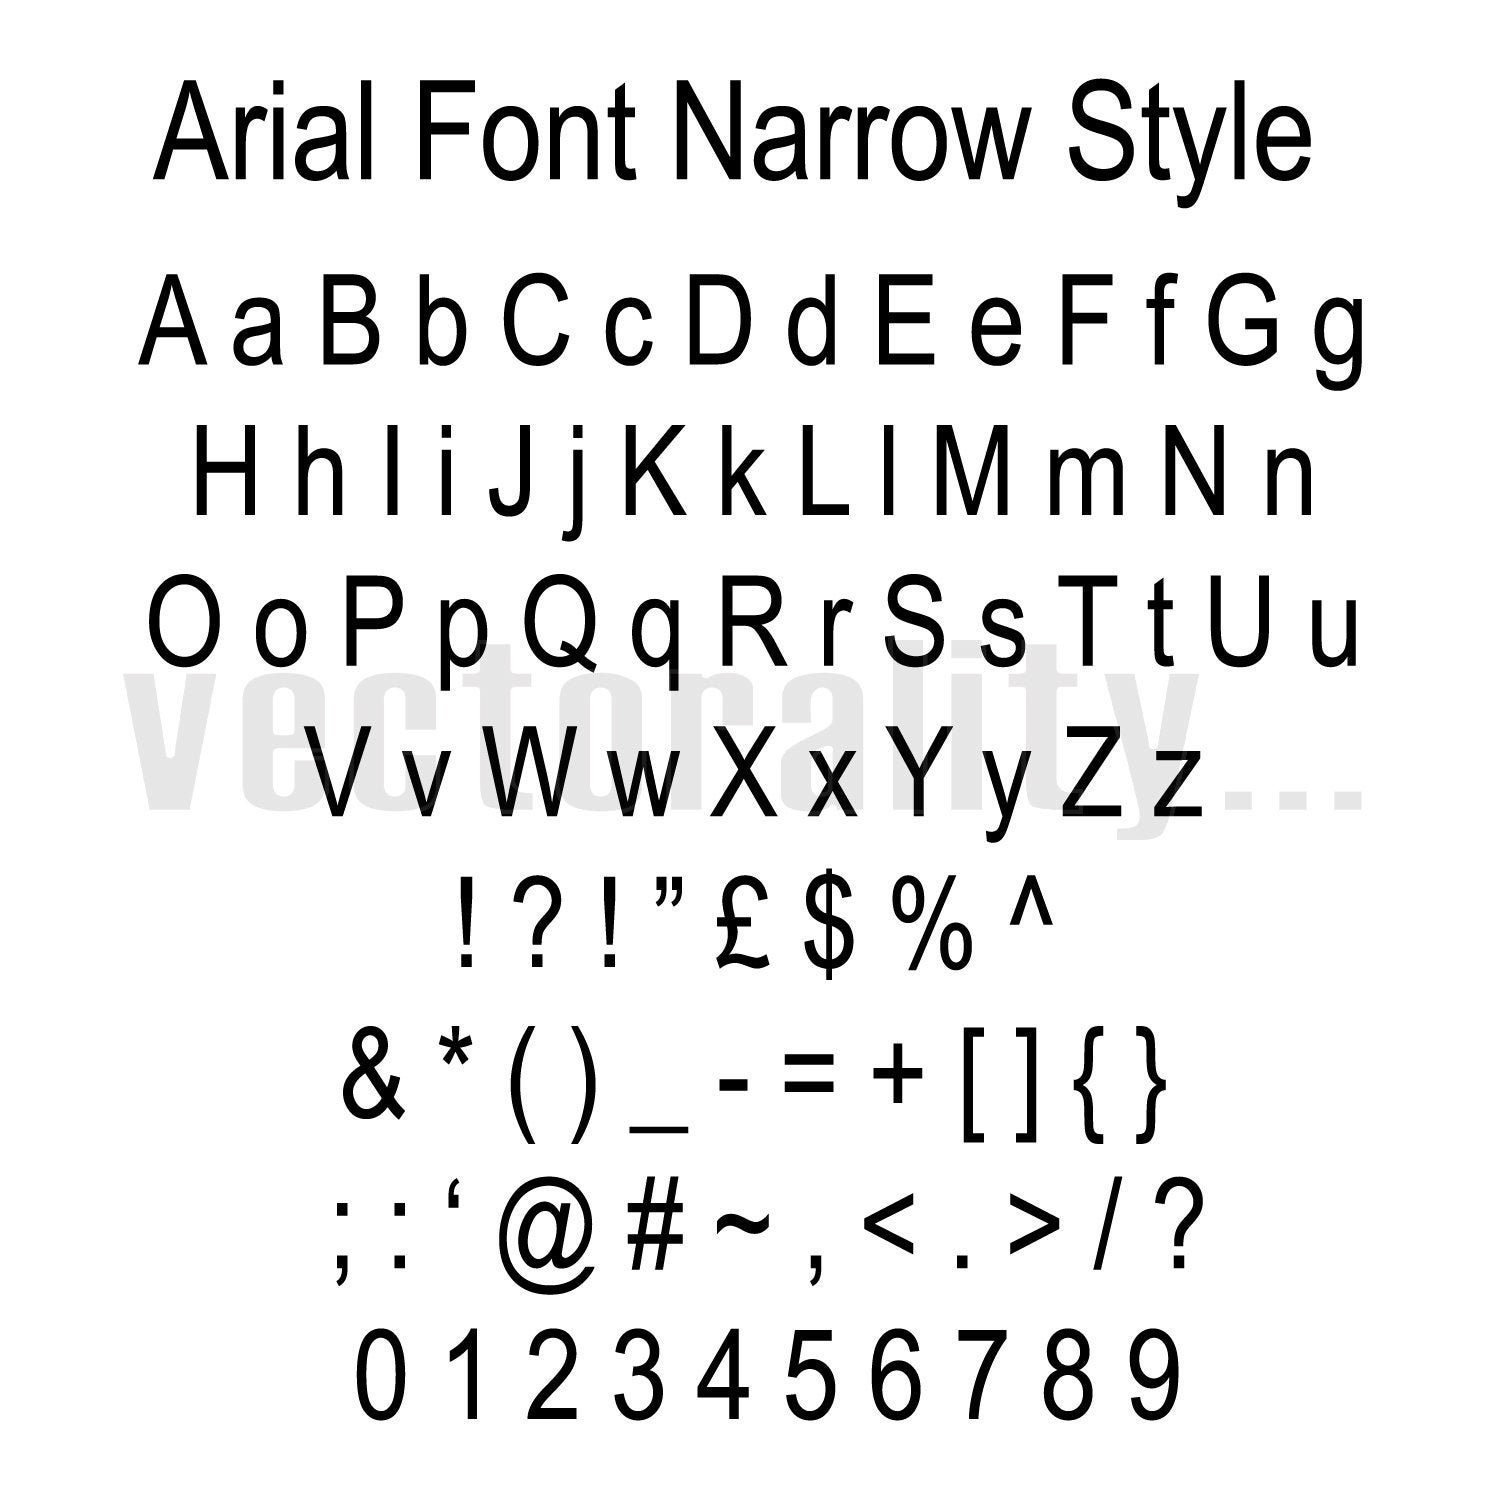 Шрифт arial narrow. Шрифт Ариал Блэк. Размер шрифта arialnarow. Ариал Нарроу шрифт в линукс.